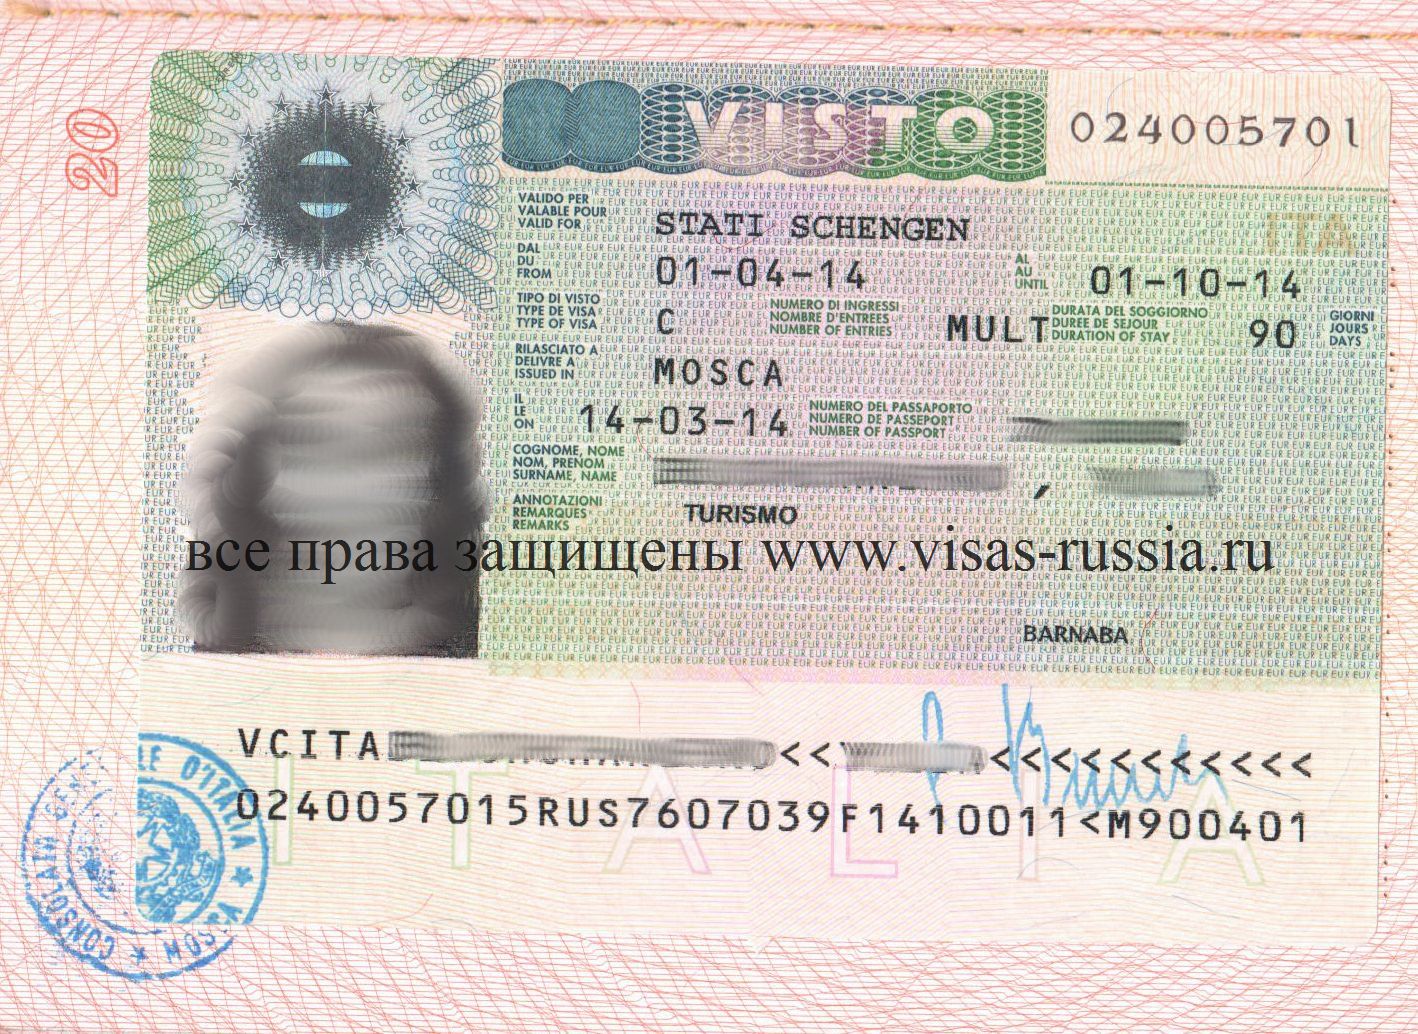 Получаем визу в швейцарию: список документов, заполнение анкеты, фото